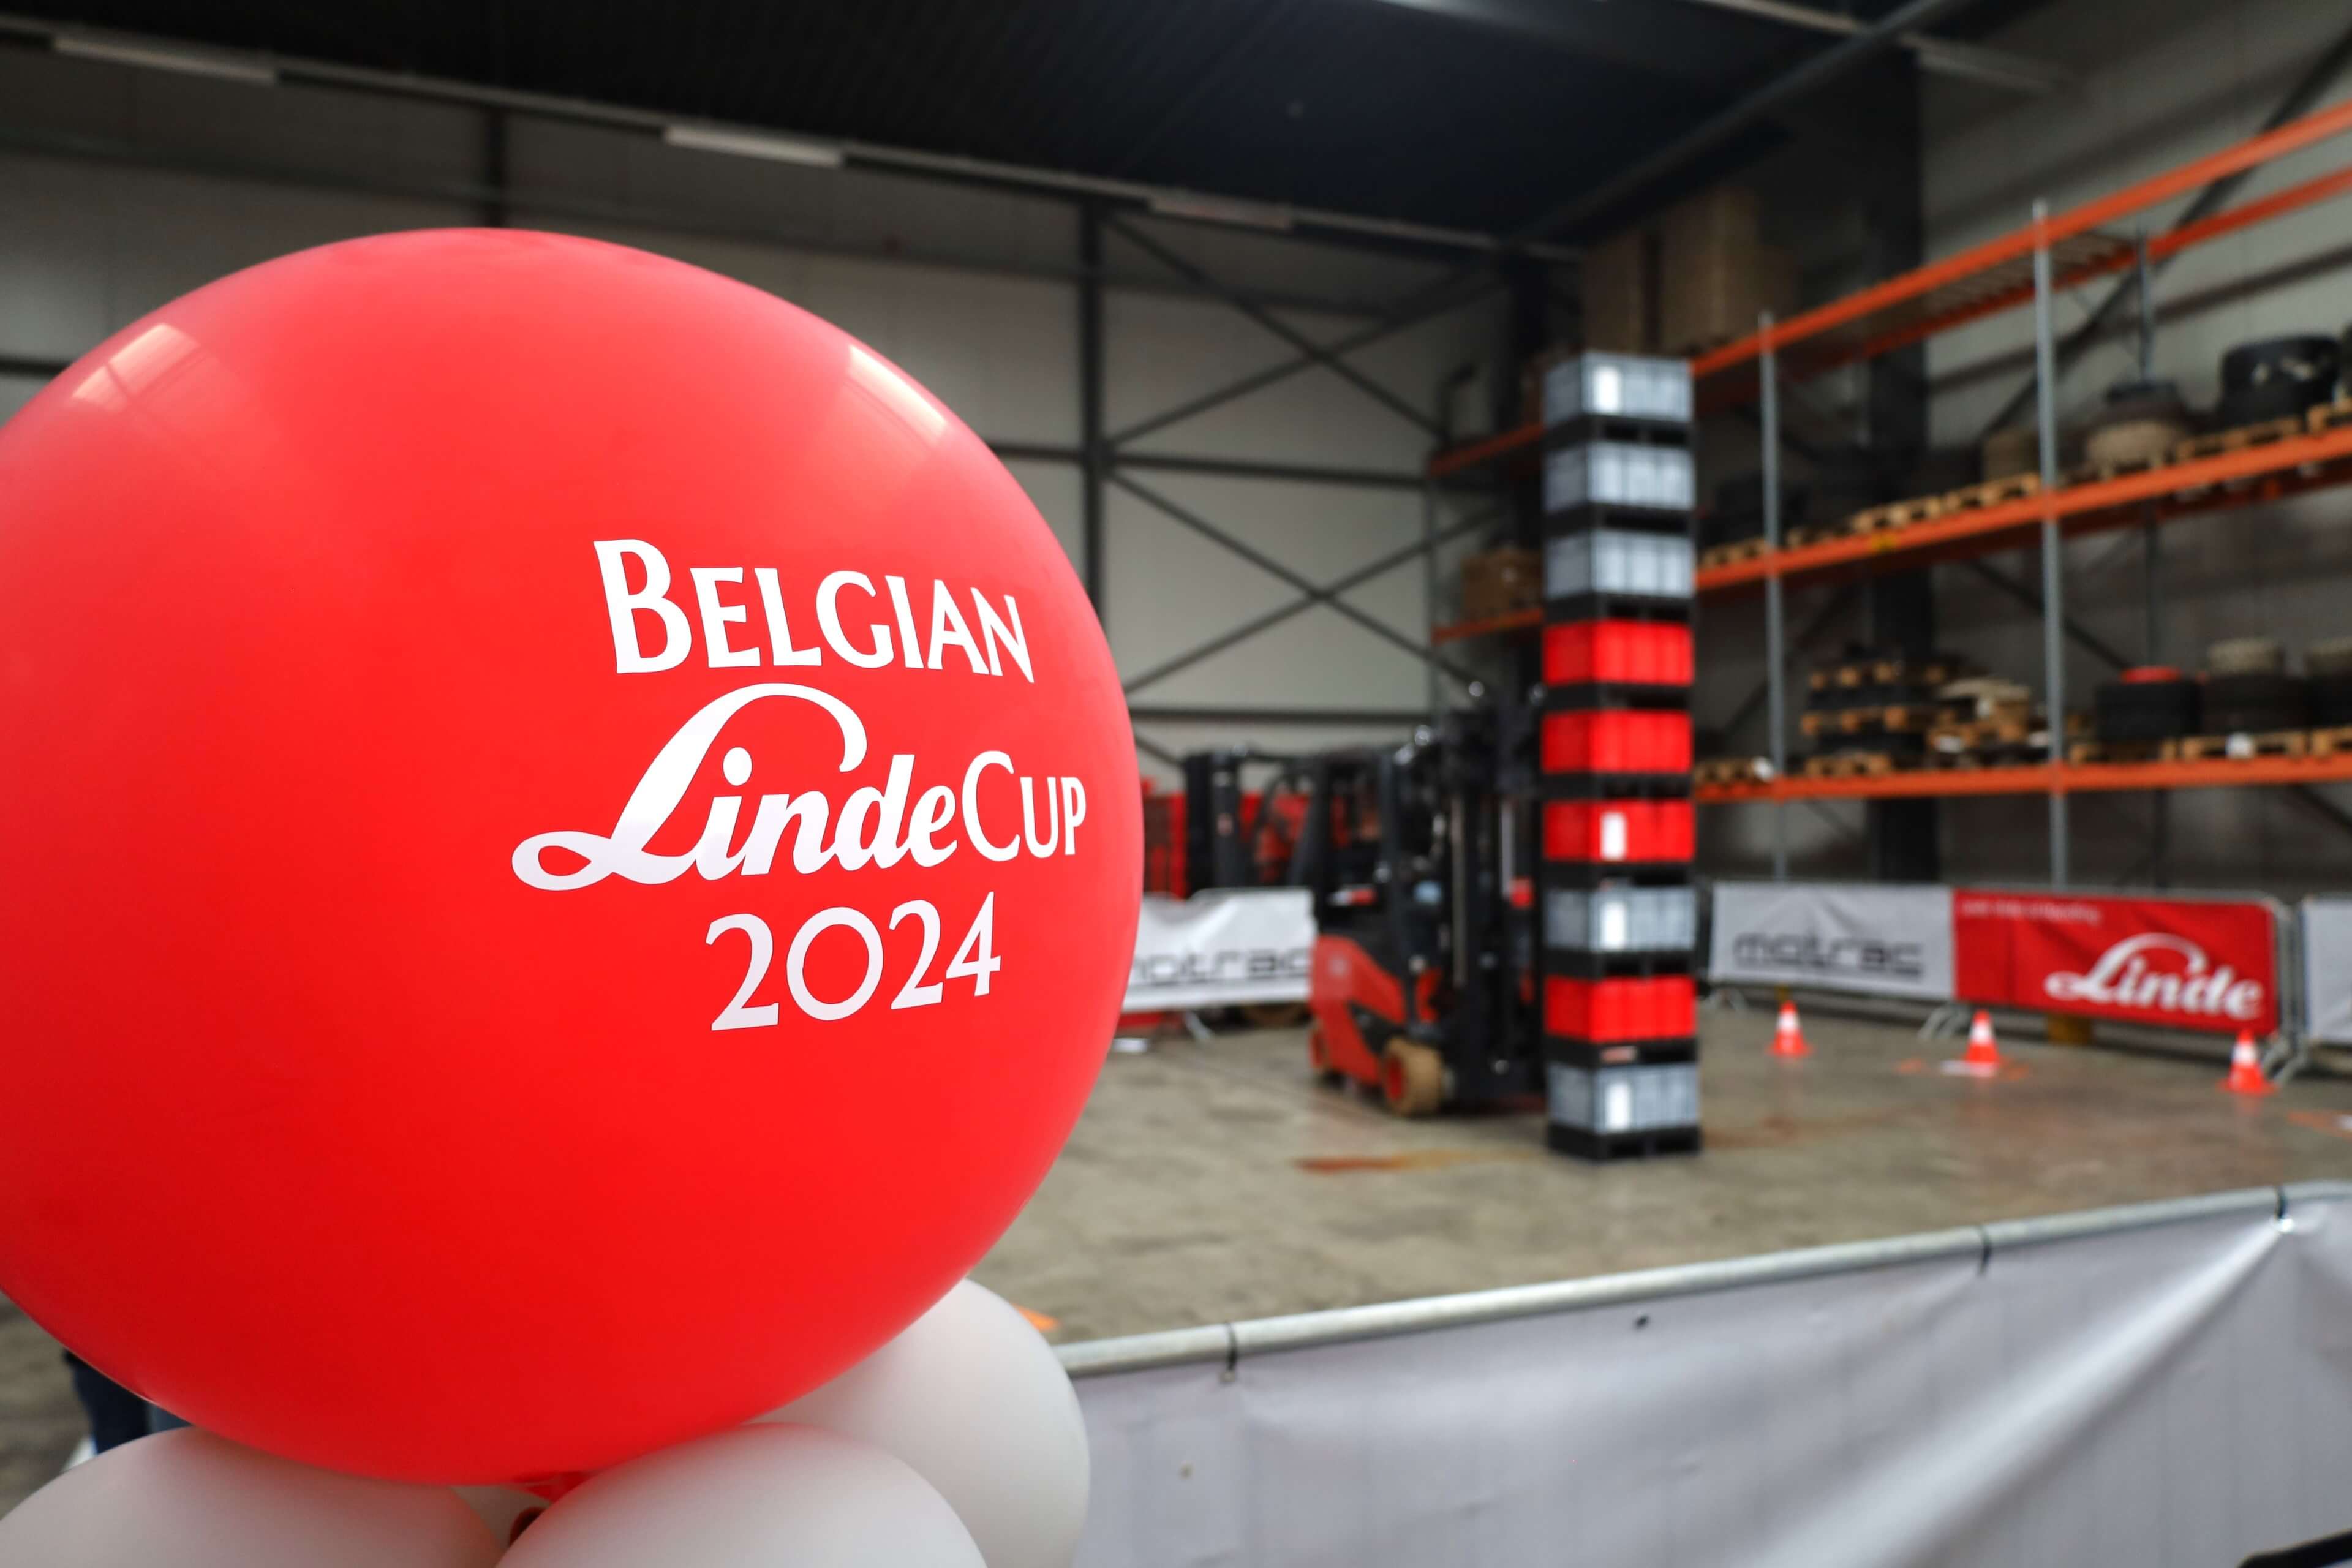 Belgian LindeCup 2024